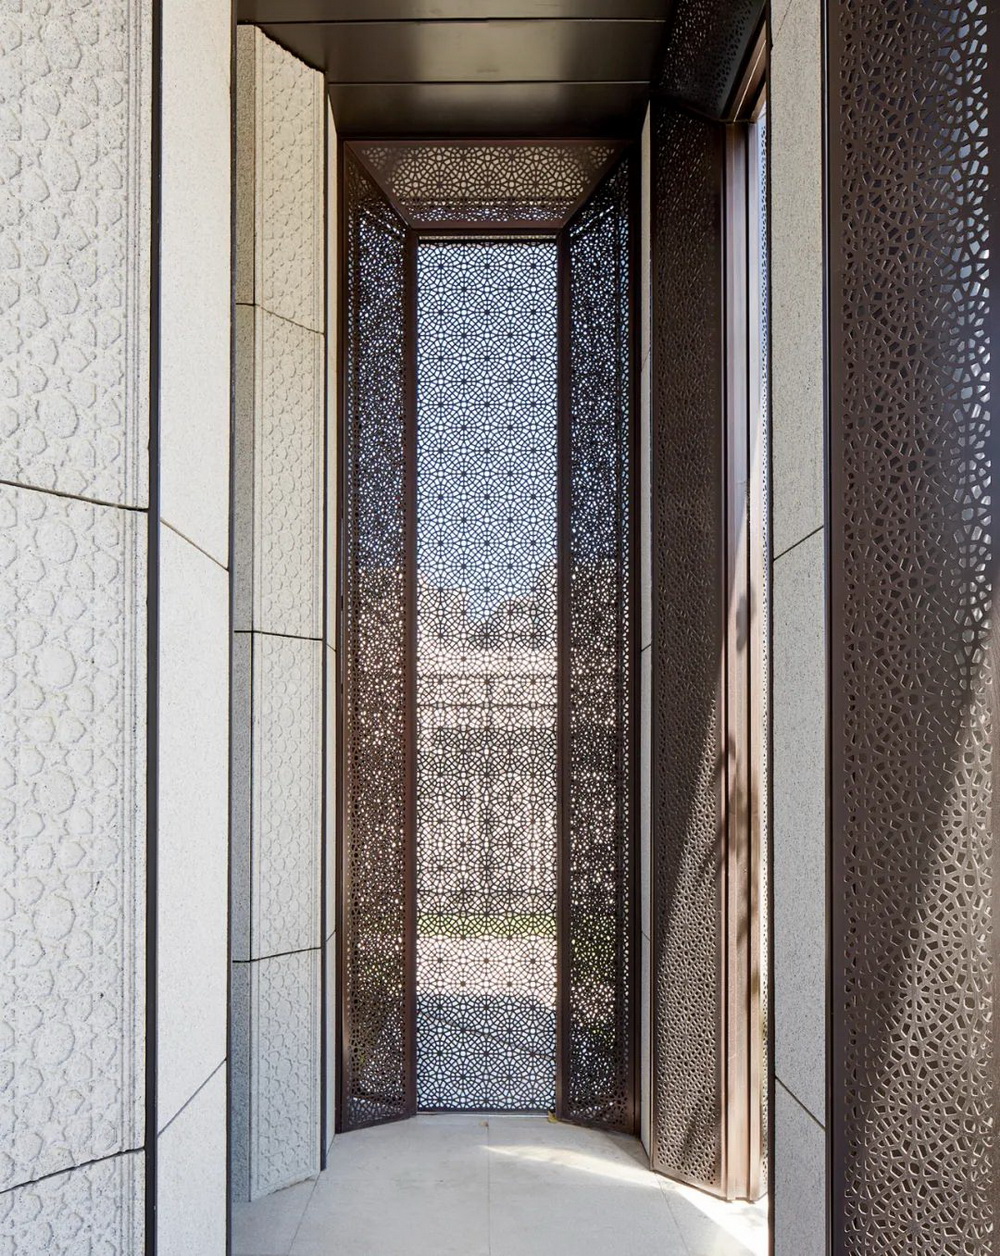 阿塞拜疆共和国驻华大使馆 建筑设计 / 弘石设计